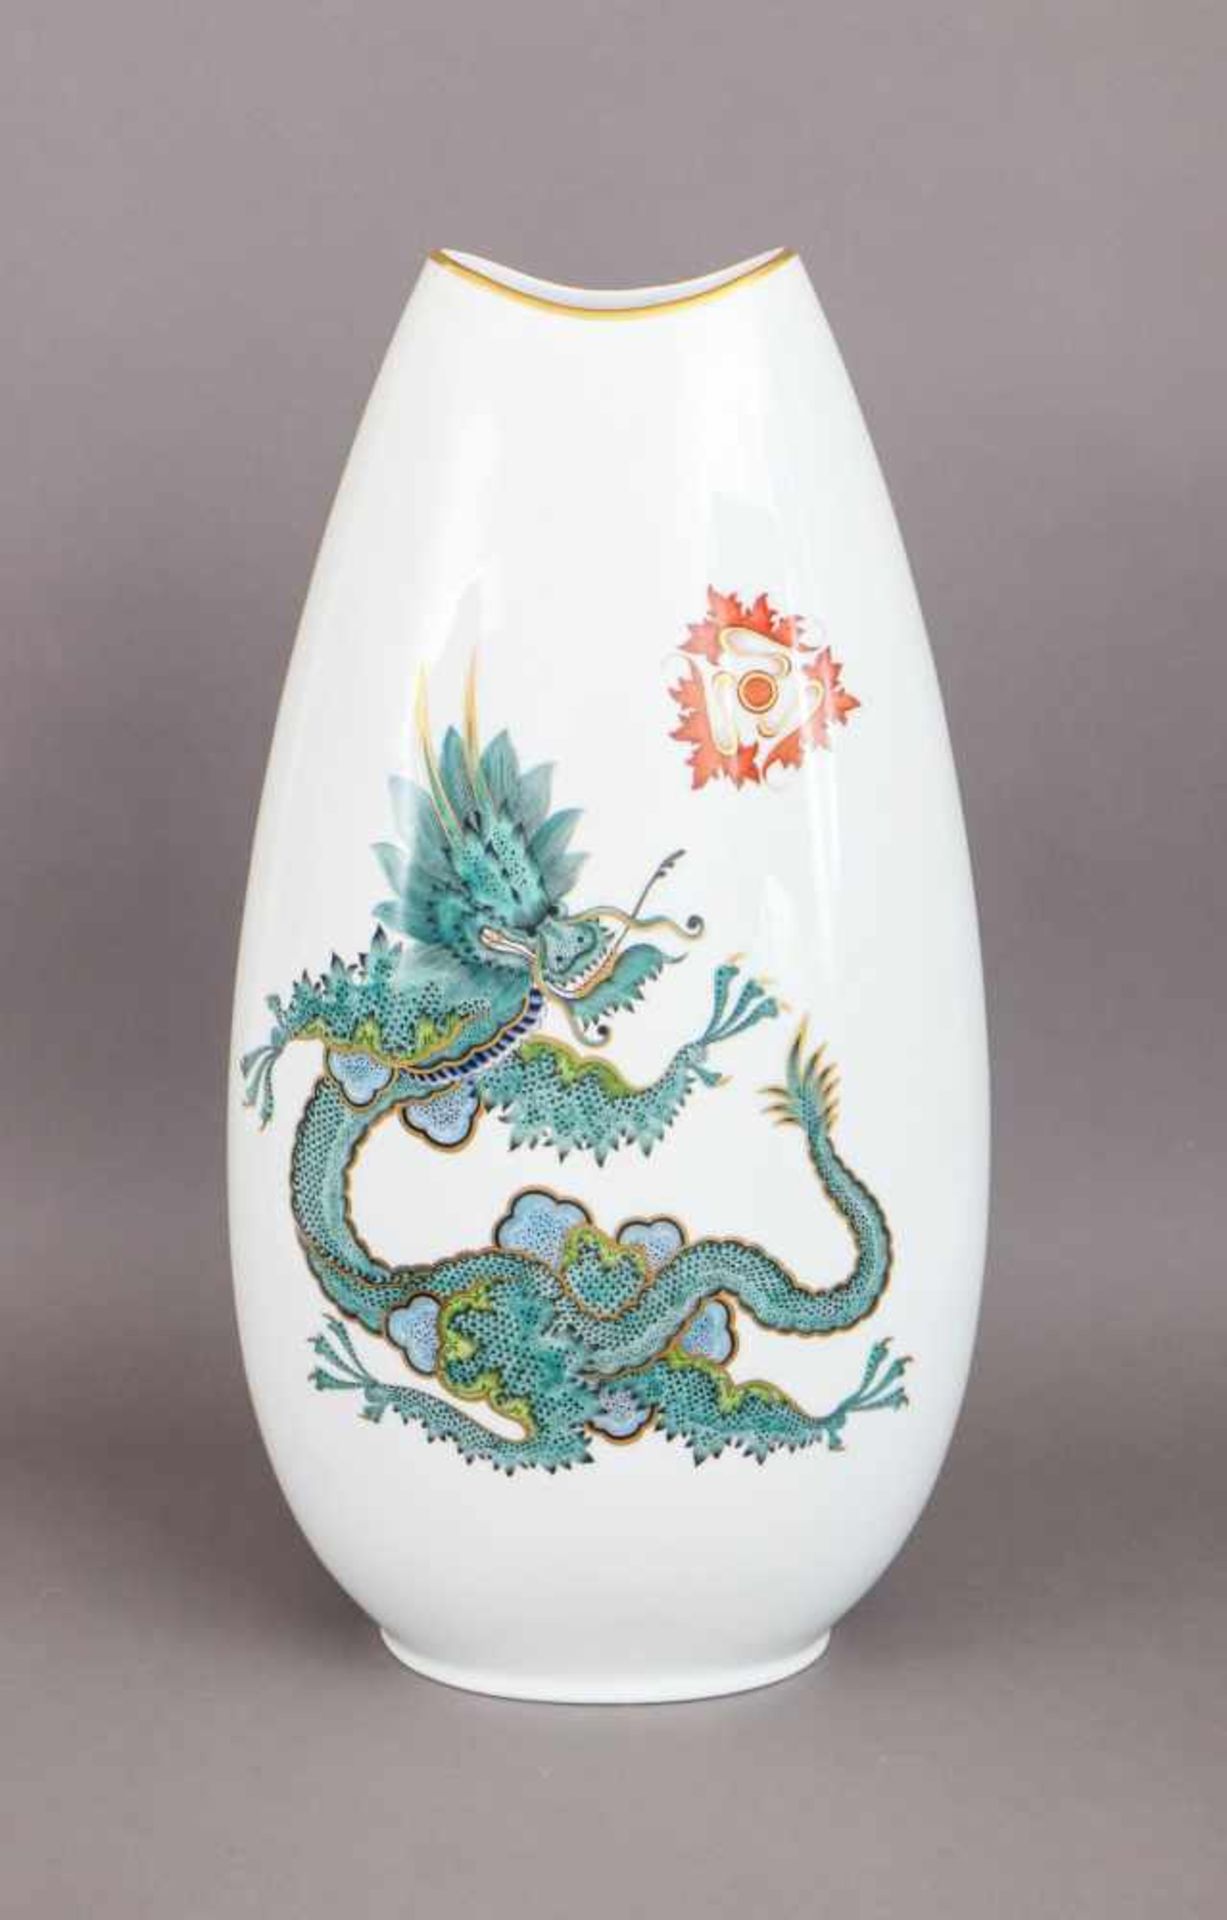 PMM (München) Porzellanvase mit Ming-Drachen Dekor im Stile Meissen1960er Jahre, großer, ovoider